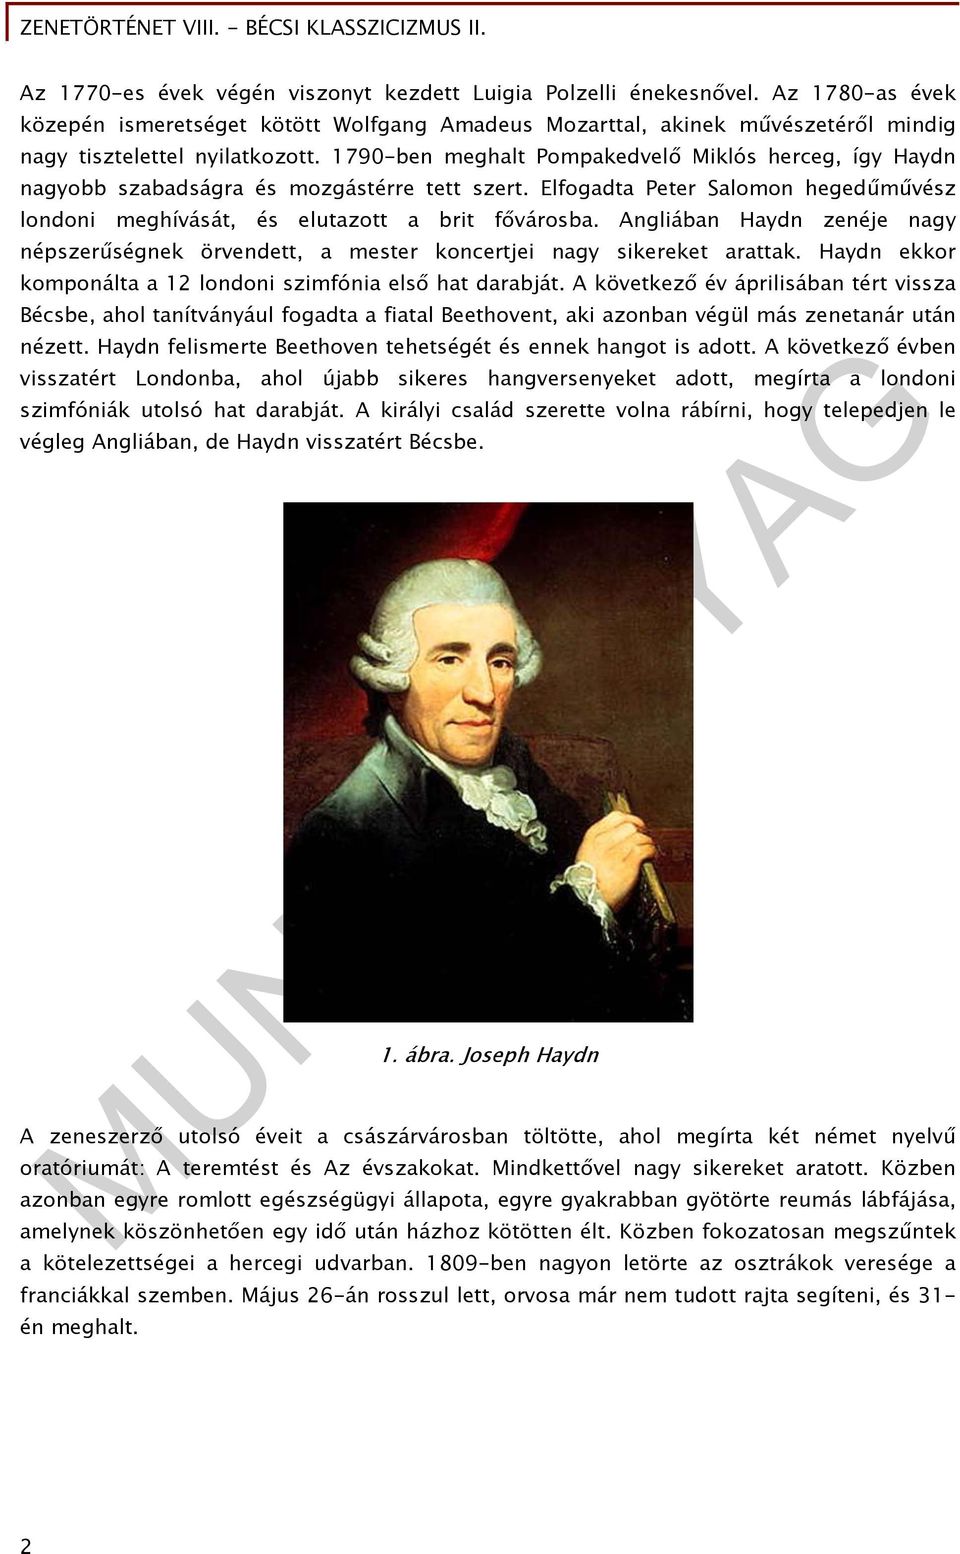 Angliában Haydn zenéje nagy népszerűségnek örvendett, a mester koncertjei nagy sikereket arattak. Haydn ekkor komponálta a 12 londoni szimfónia első hat darabját.